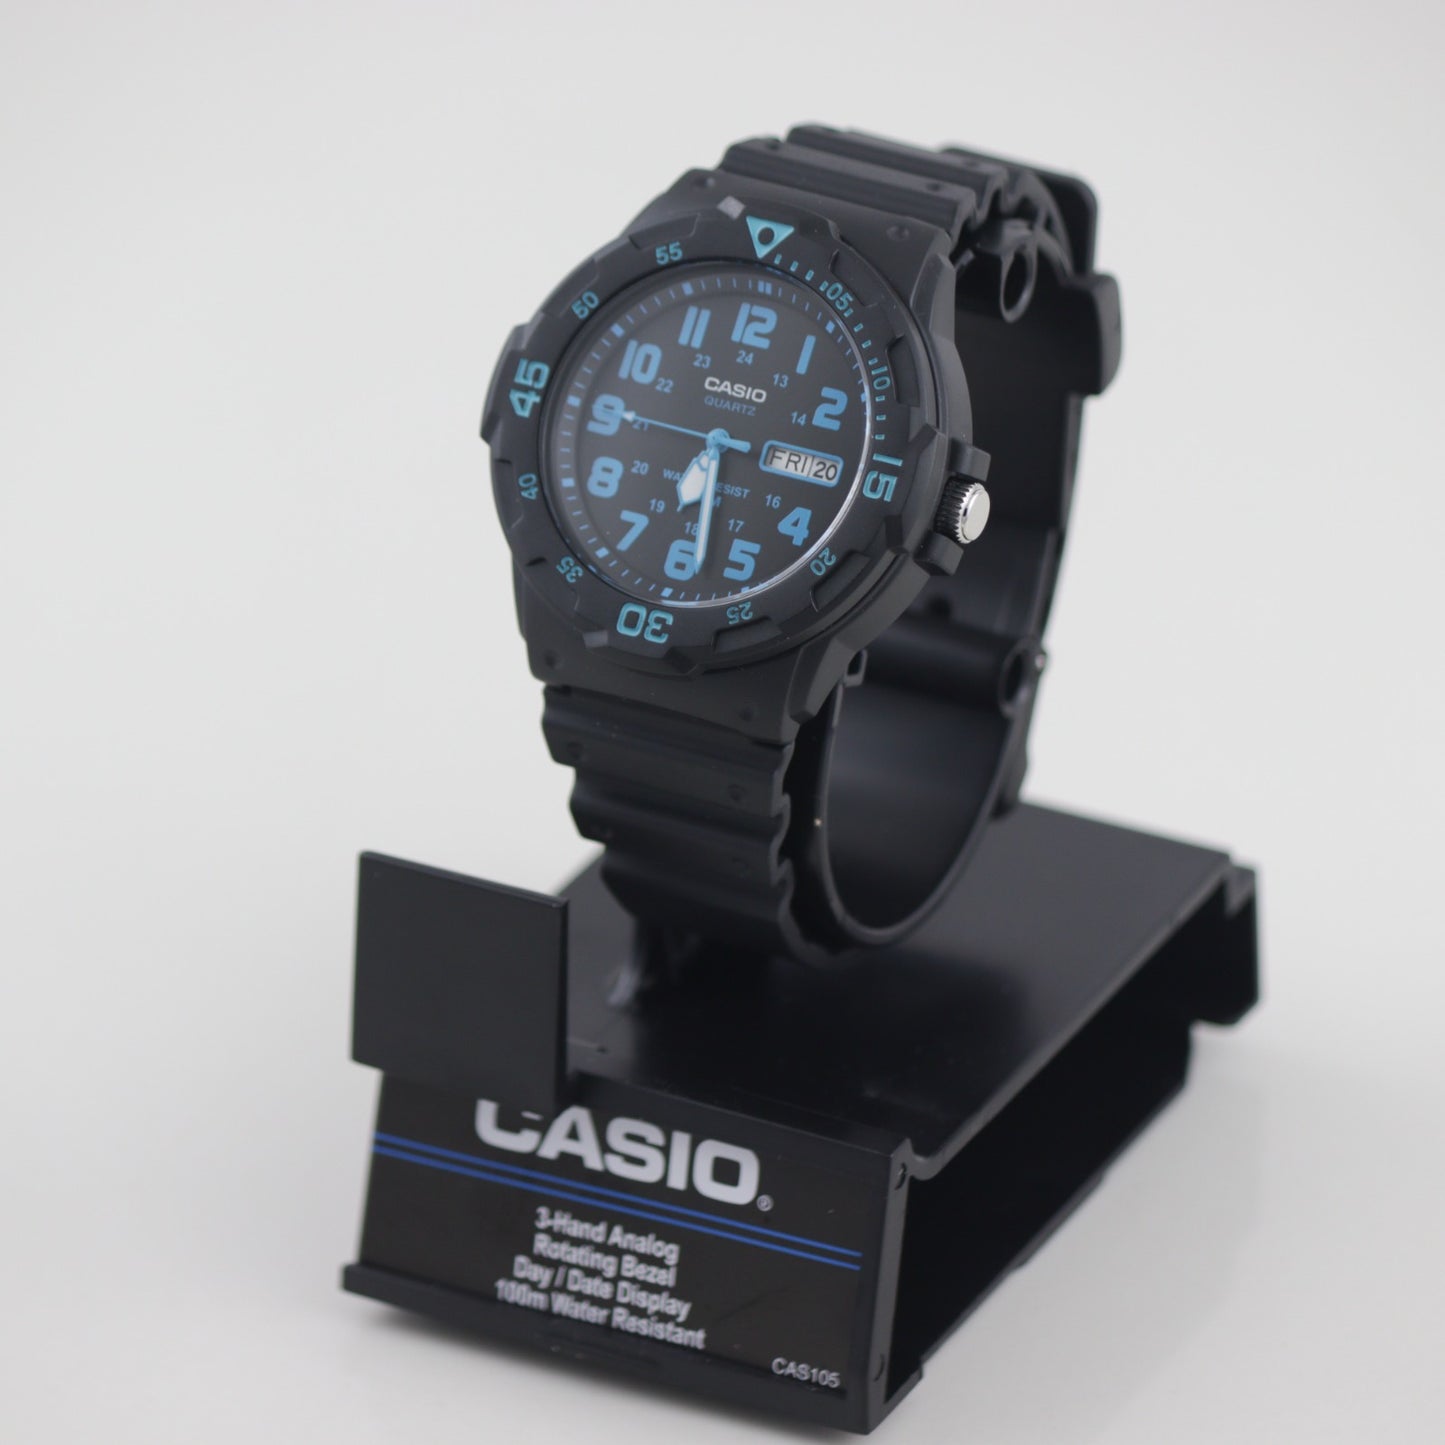 Casio Men's Dive Style Watch, Black/Blue Accents